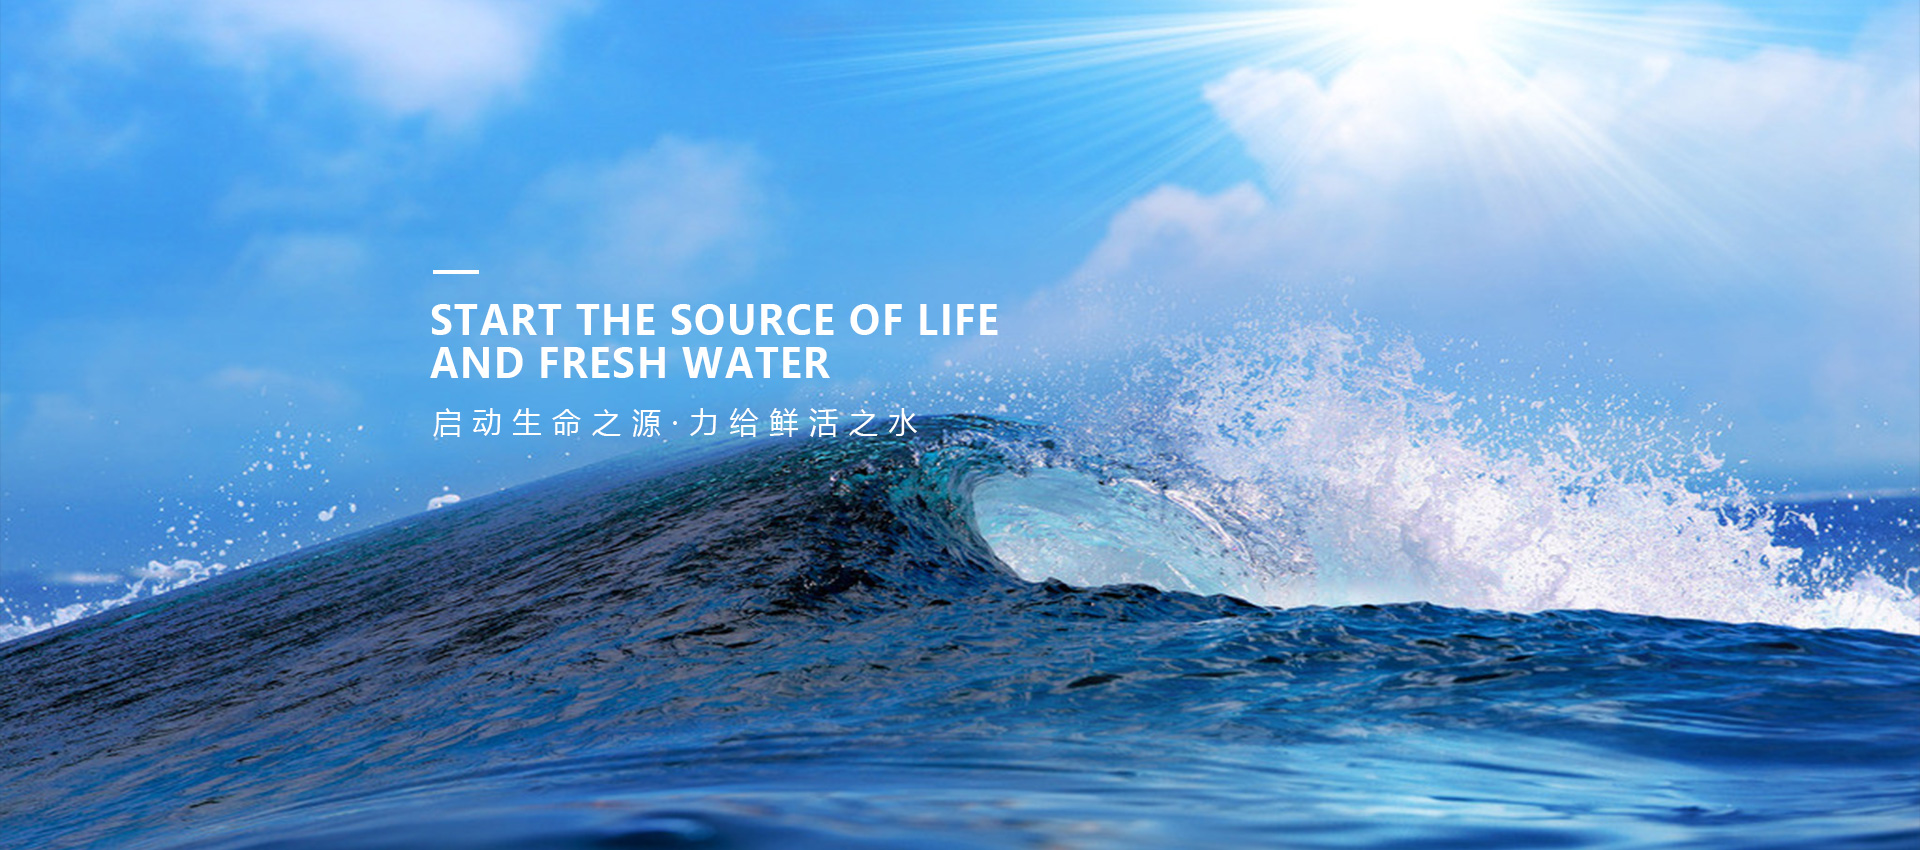 启动生命之源·力给鲜活之水